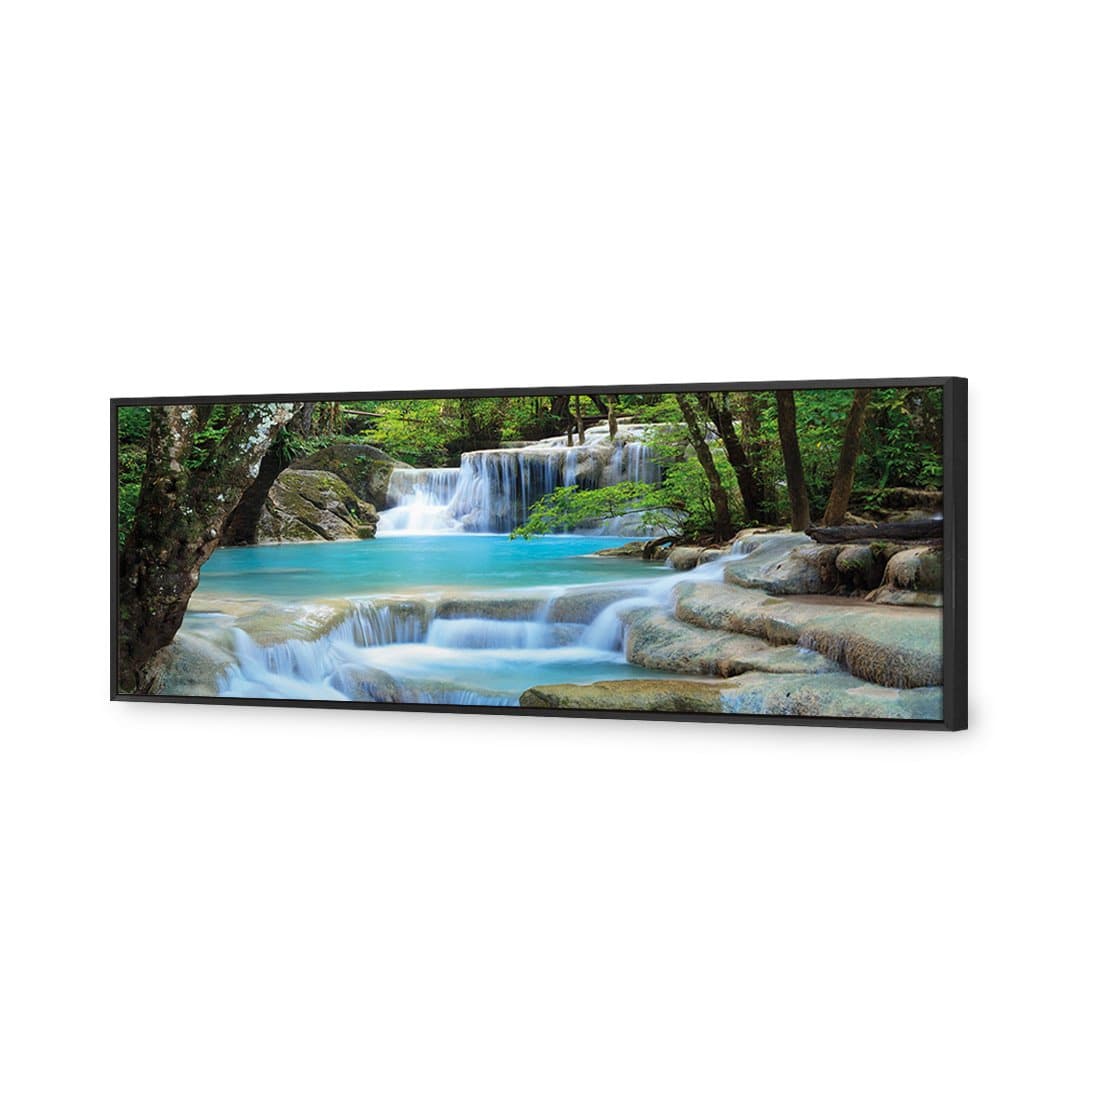 Soft Waterfalls Canvas Art-Canvas-Wall Art Designs-60x20cm-Canvas - Black Frame-Wall Art Designs